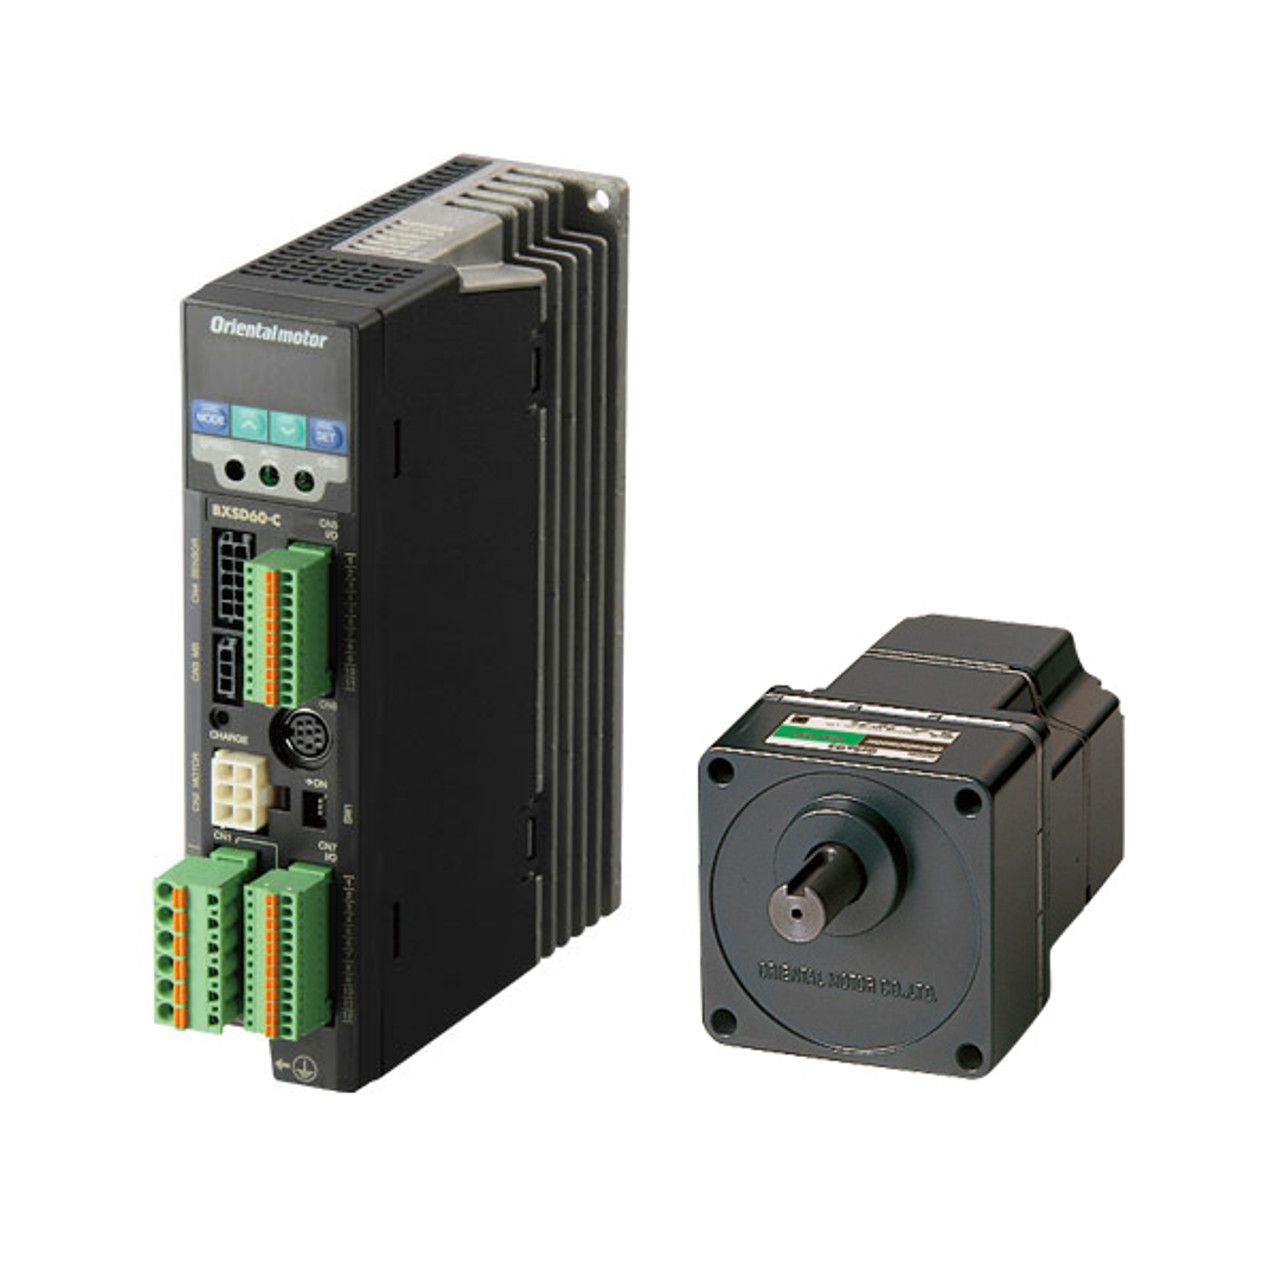 BXM230M-50 / BXSD30-C2 - Product Image